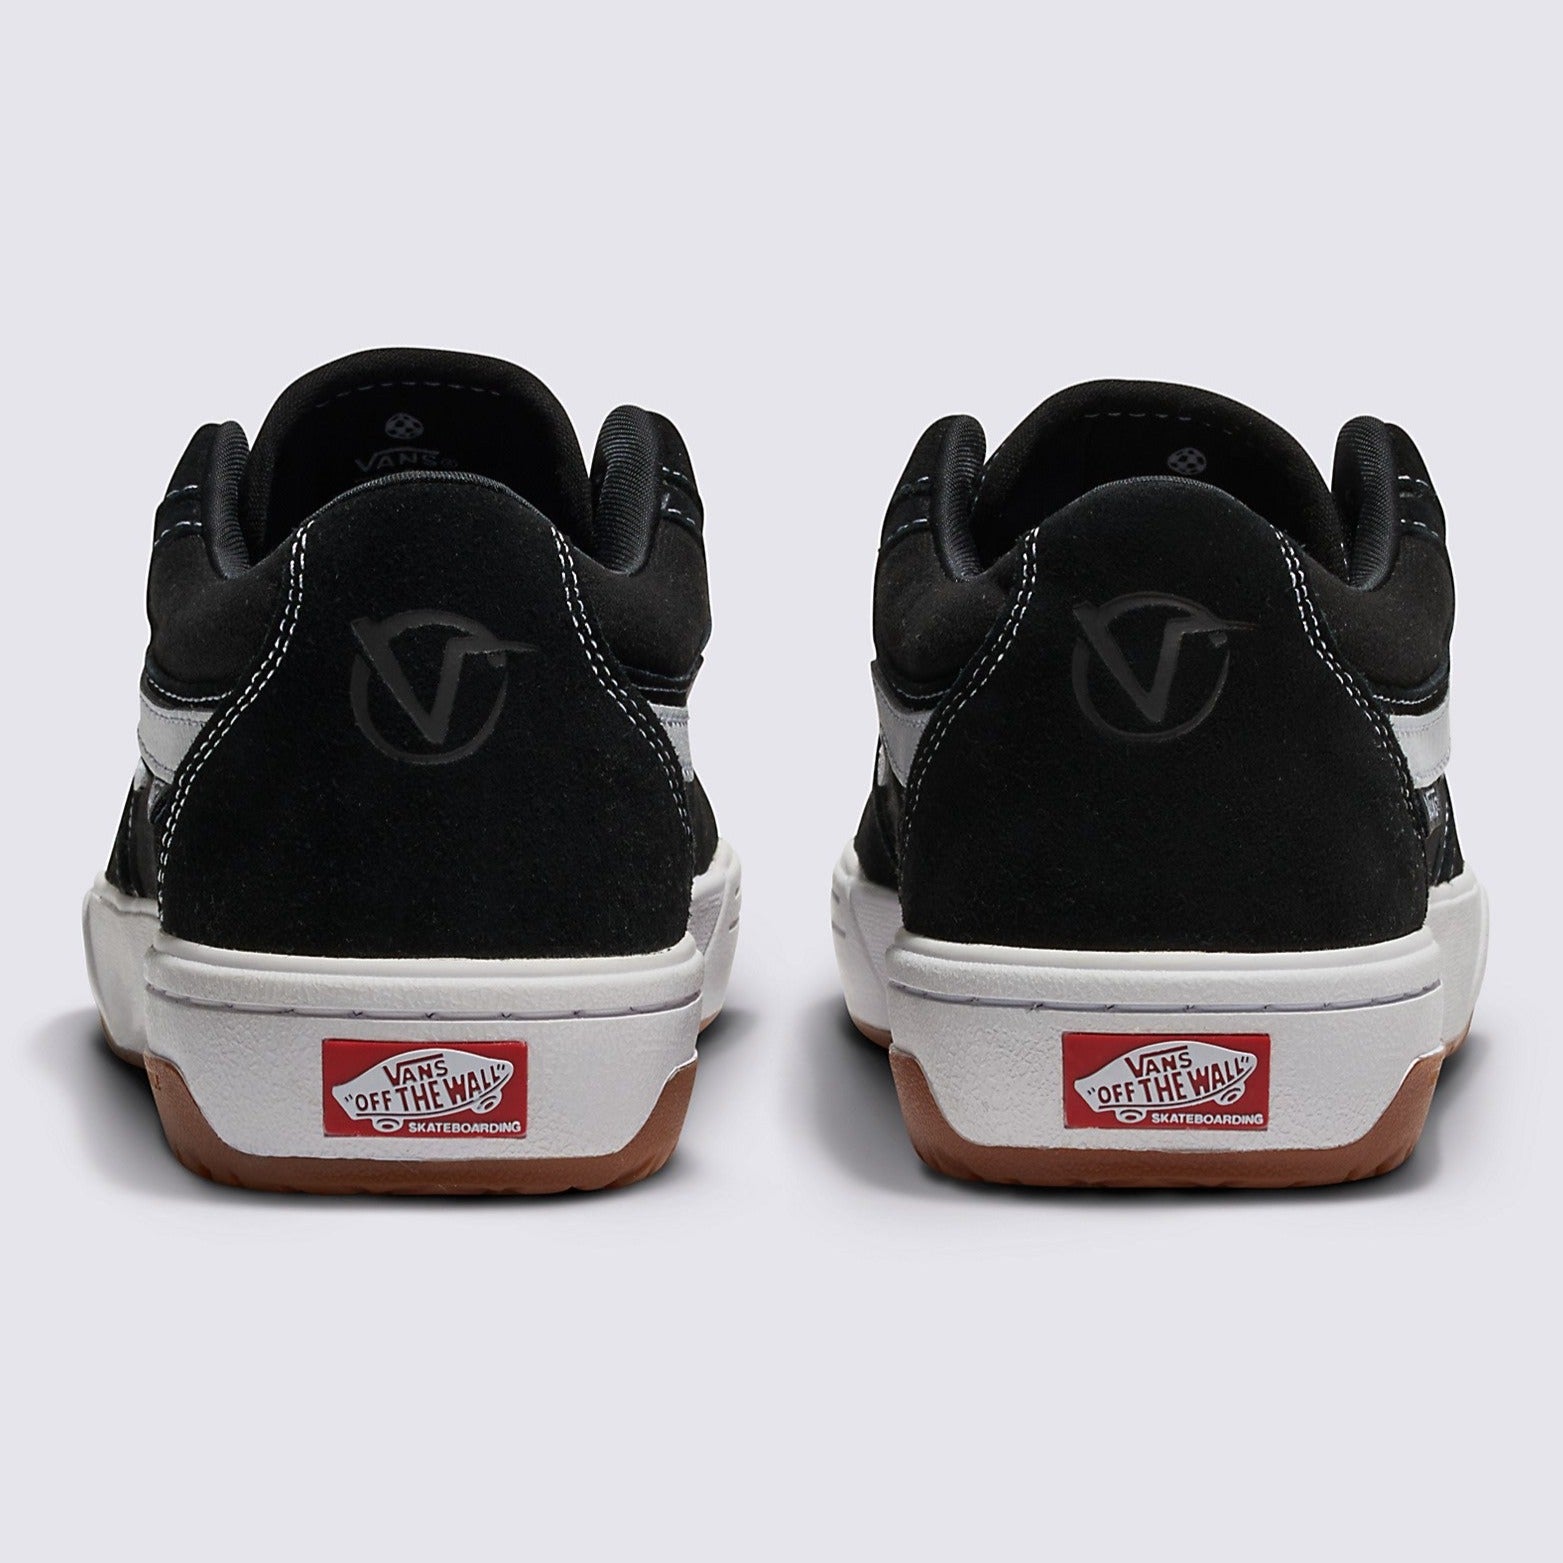 Black/White Rowan 2 Vans Skate Shoe Back